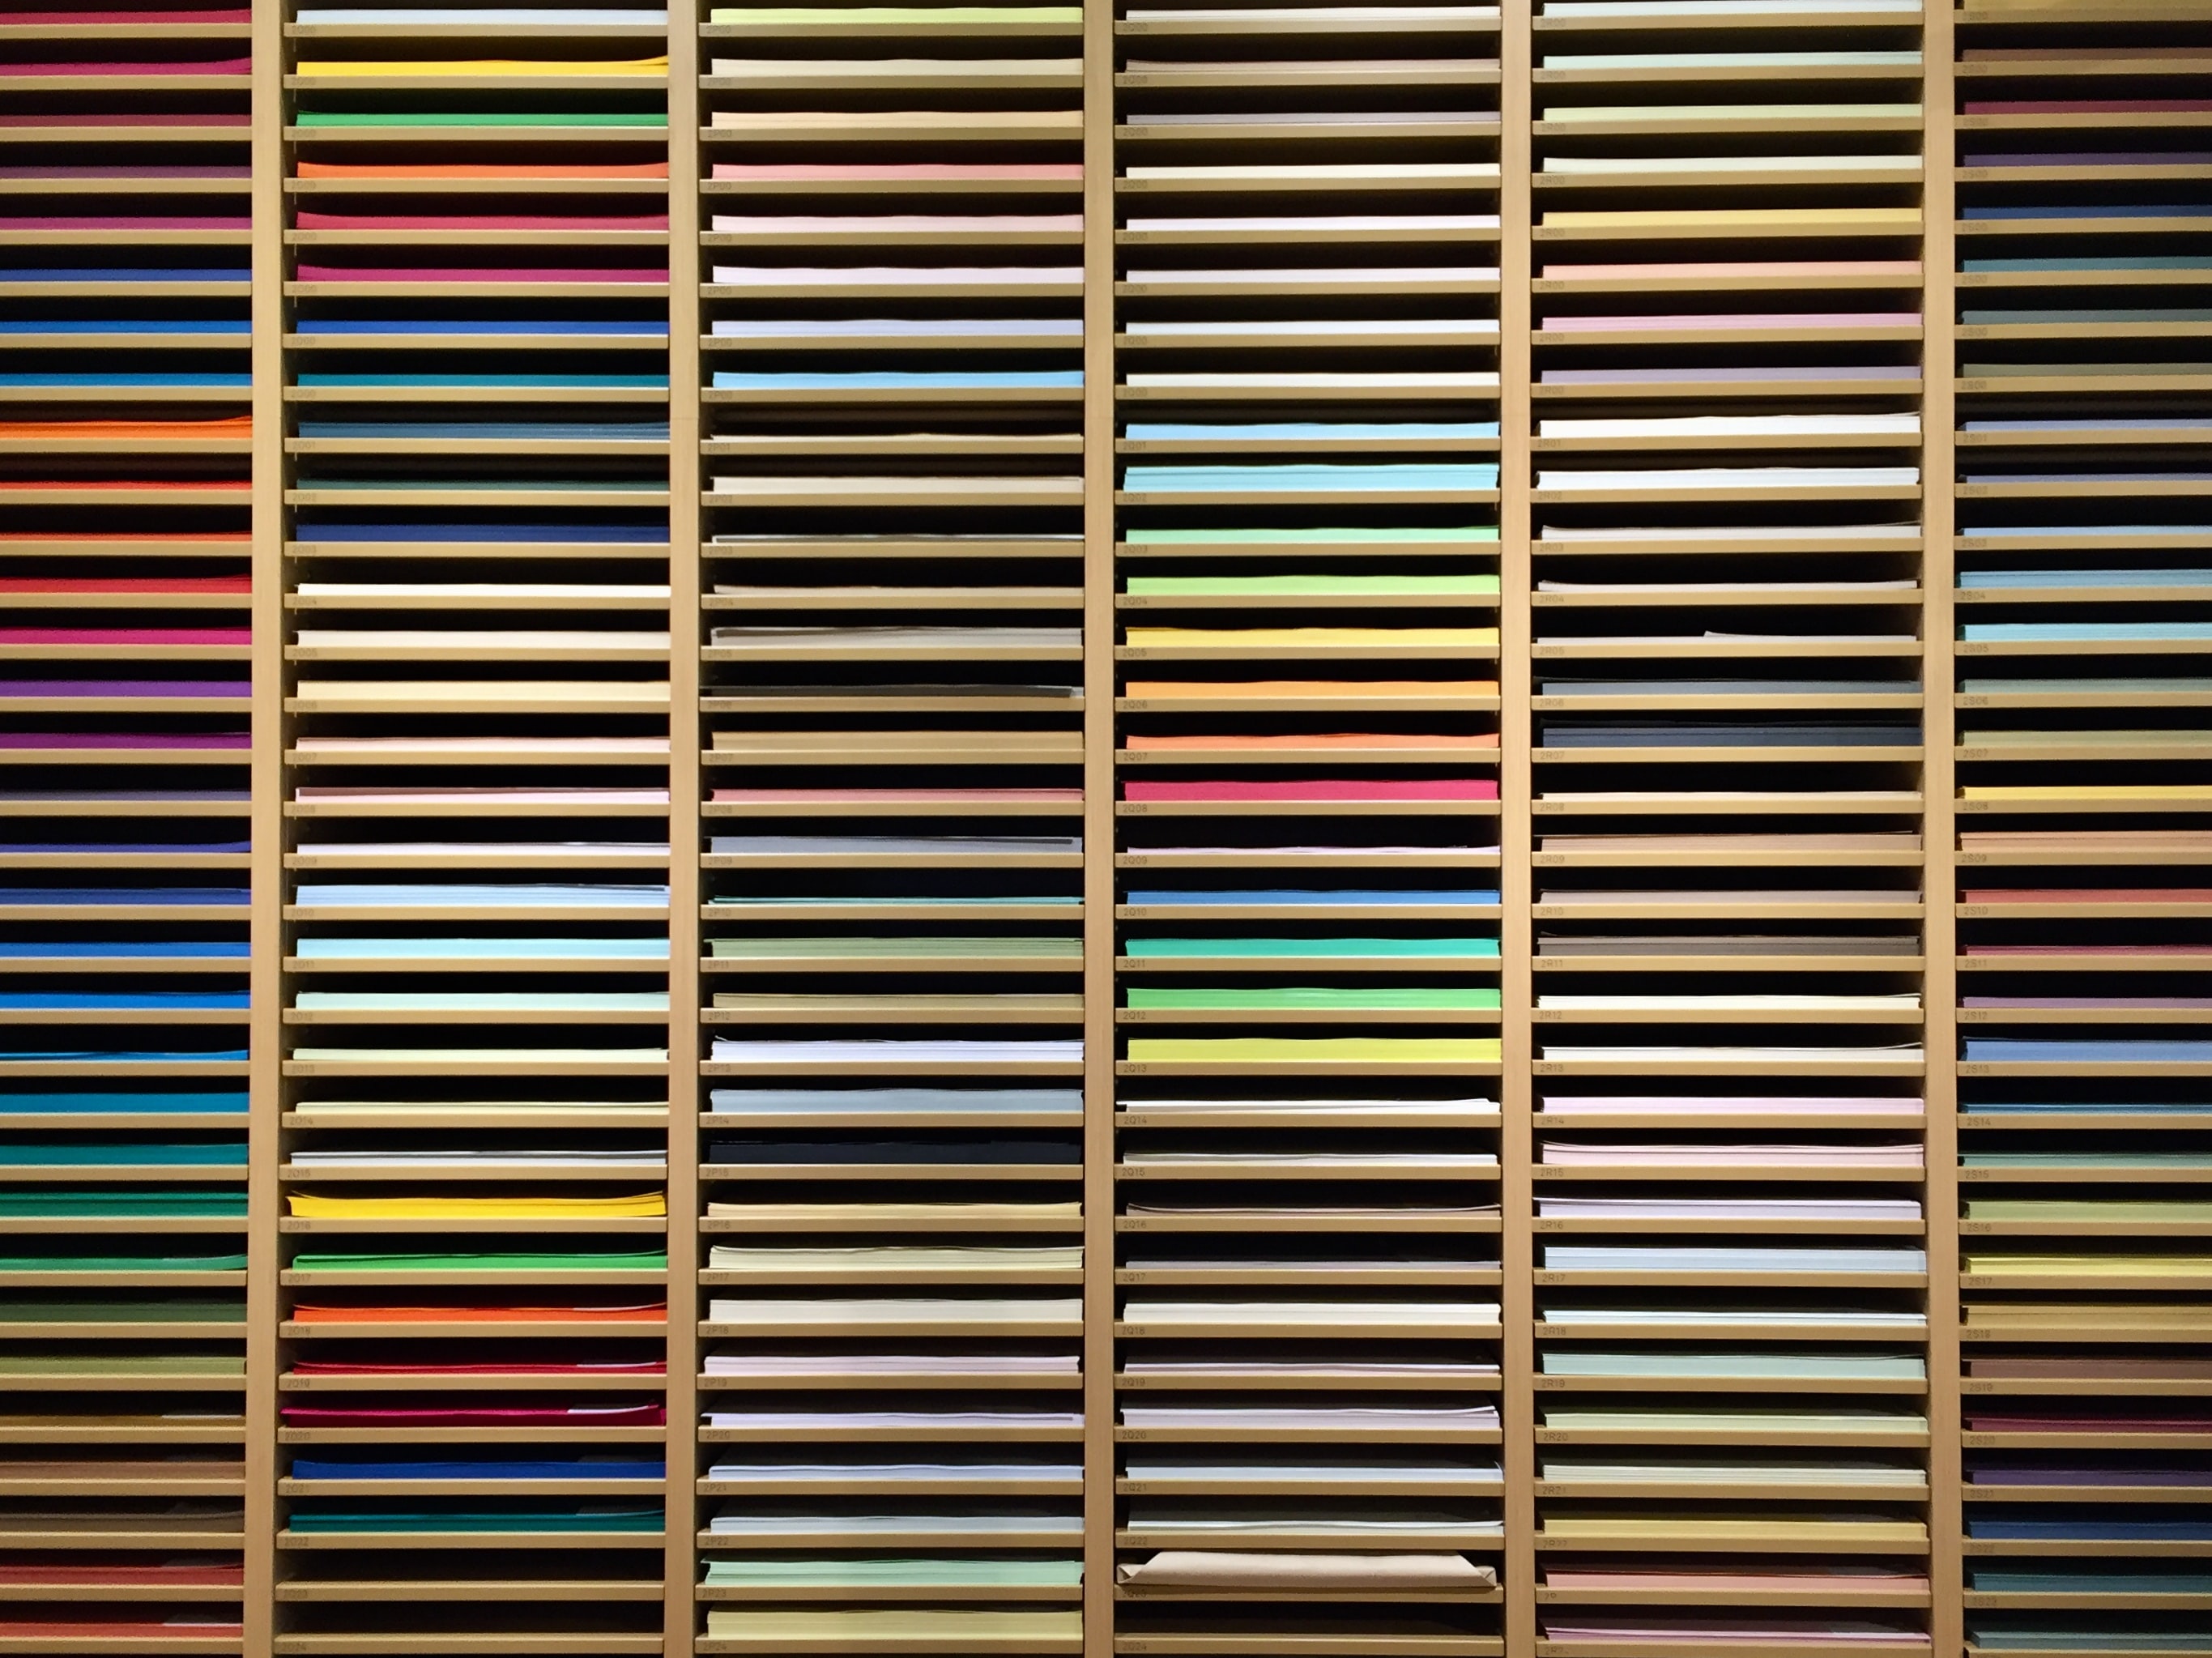 multicolored, miscellanea, miscellaneous, motley, paper, shelf